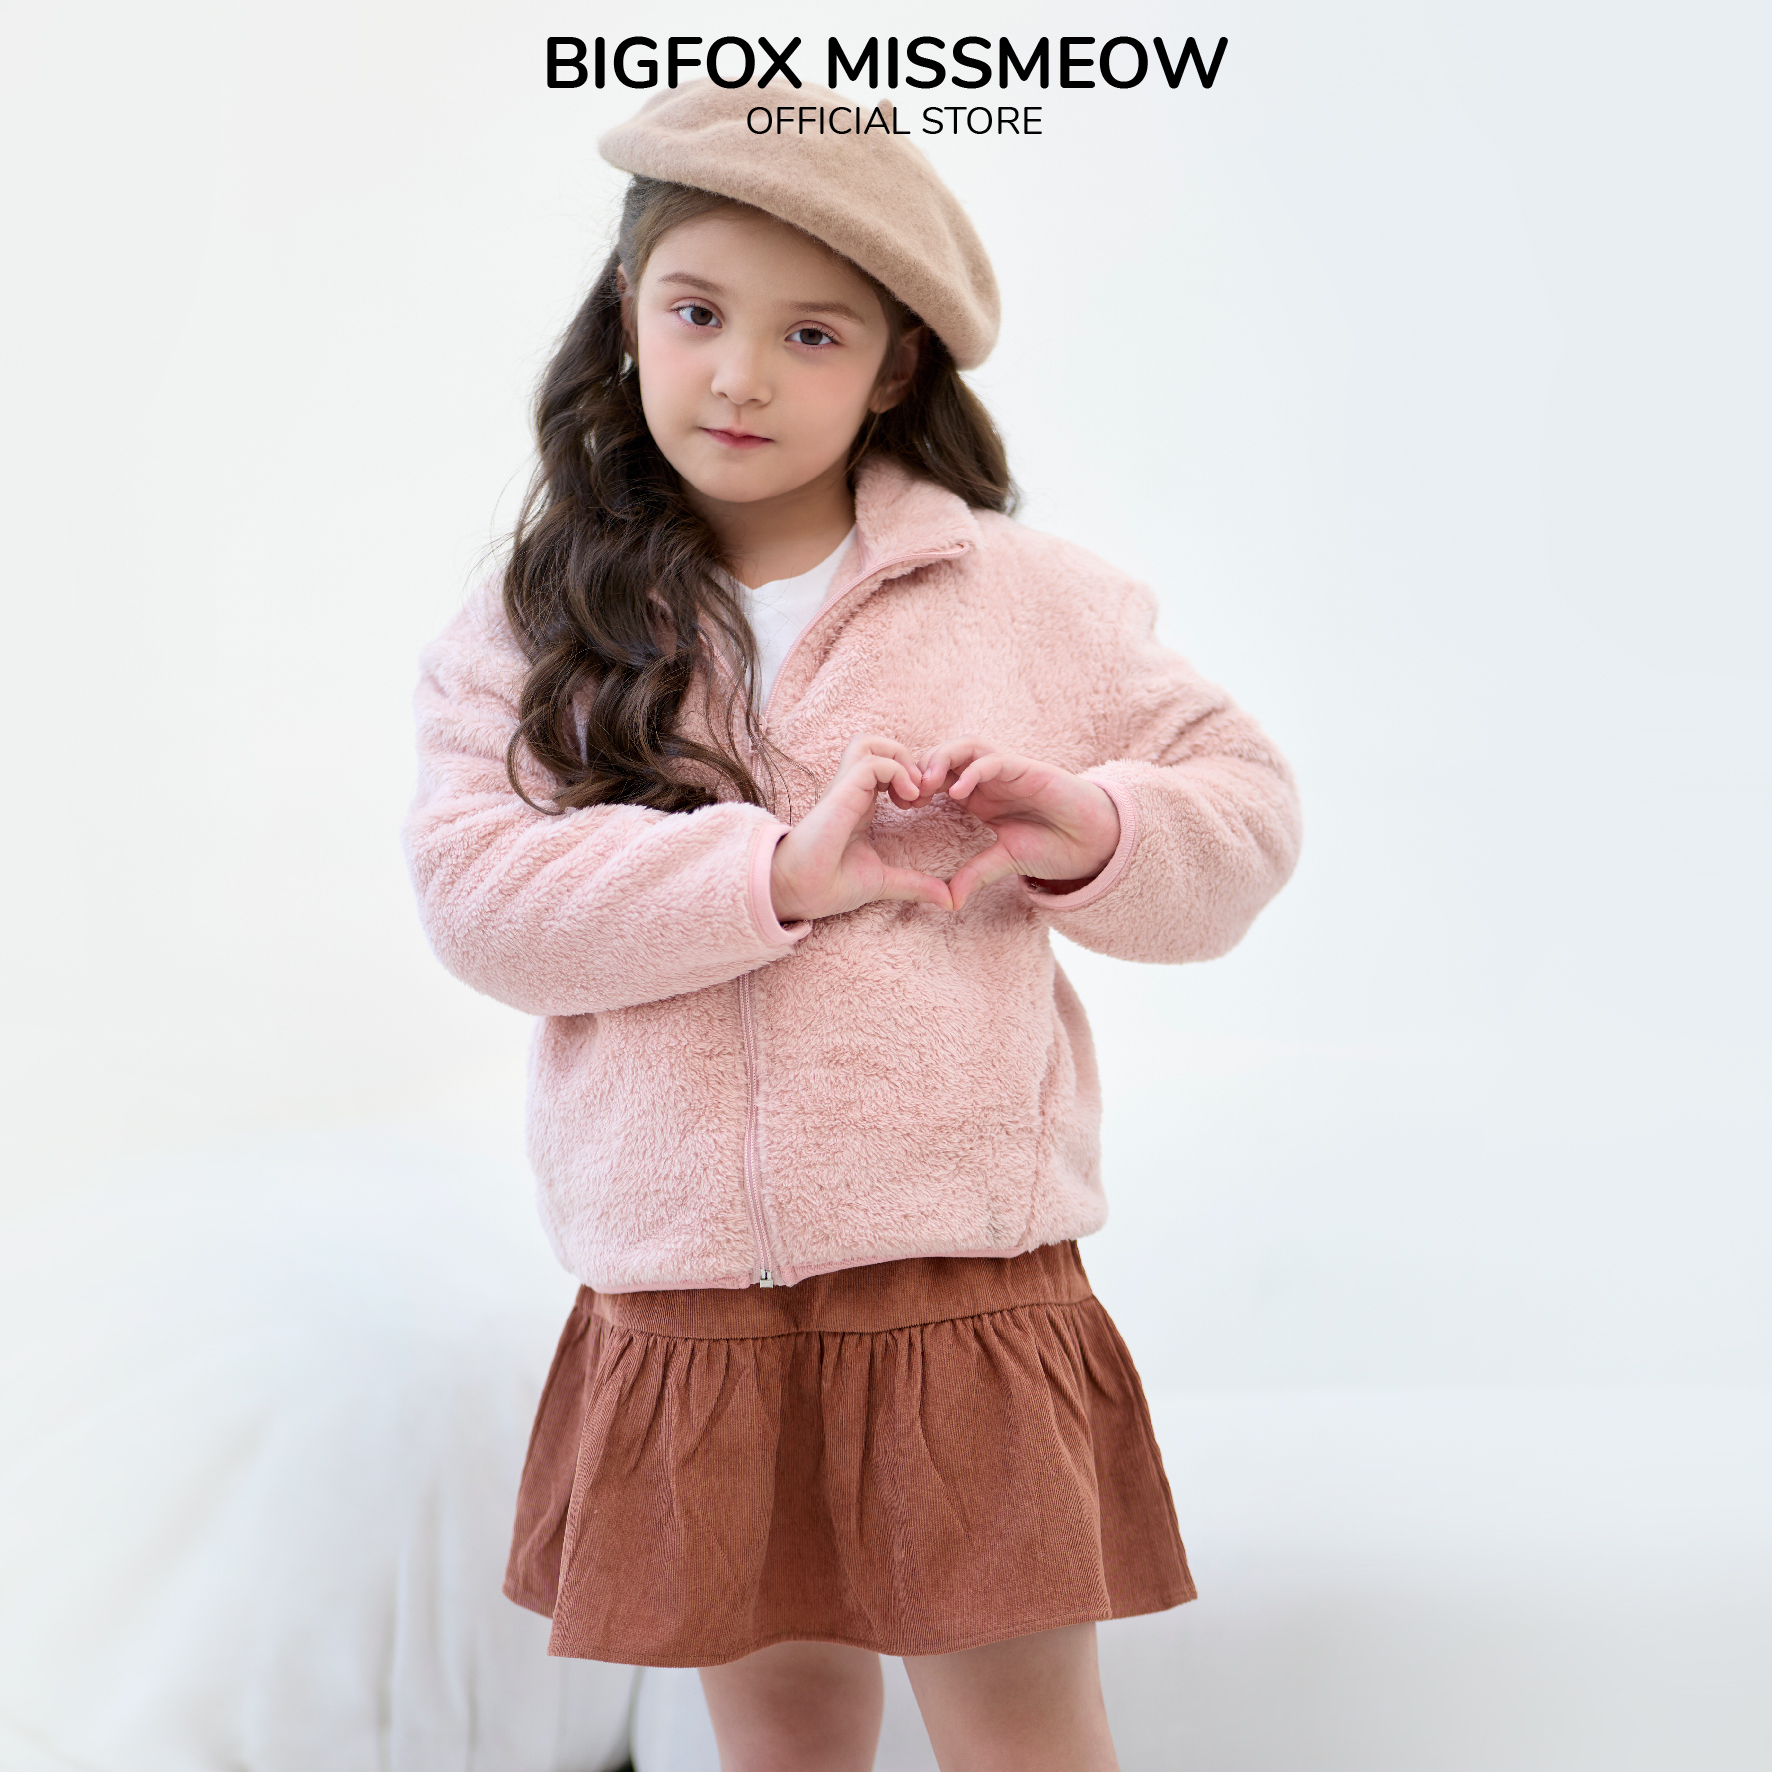 Áo khoác lông cho bé trai bé gái Bigfox Miss Meow mặc mùa đông size đại trẻ em 3,4,5,6,7,8,9,10,11 đến 15 tuổi